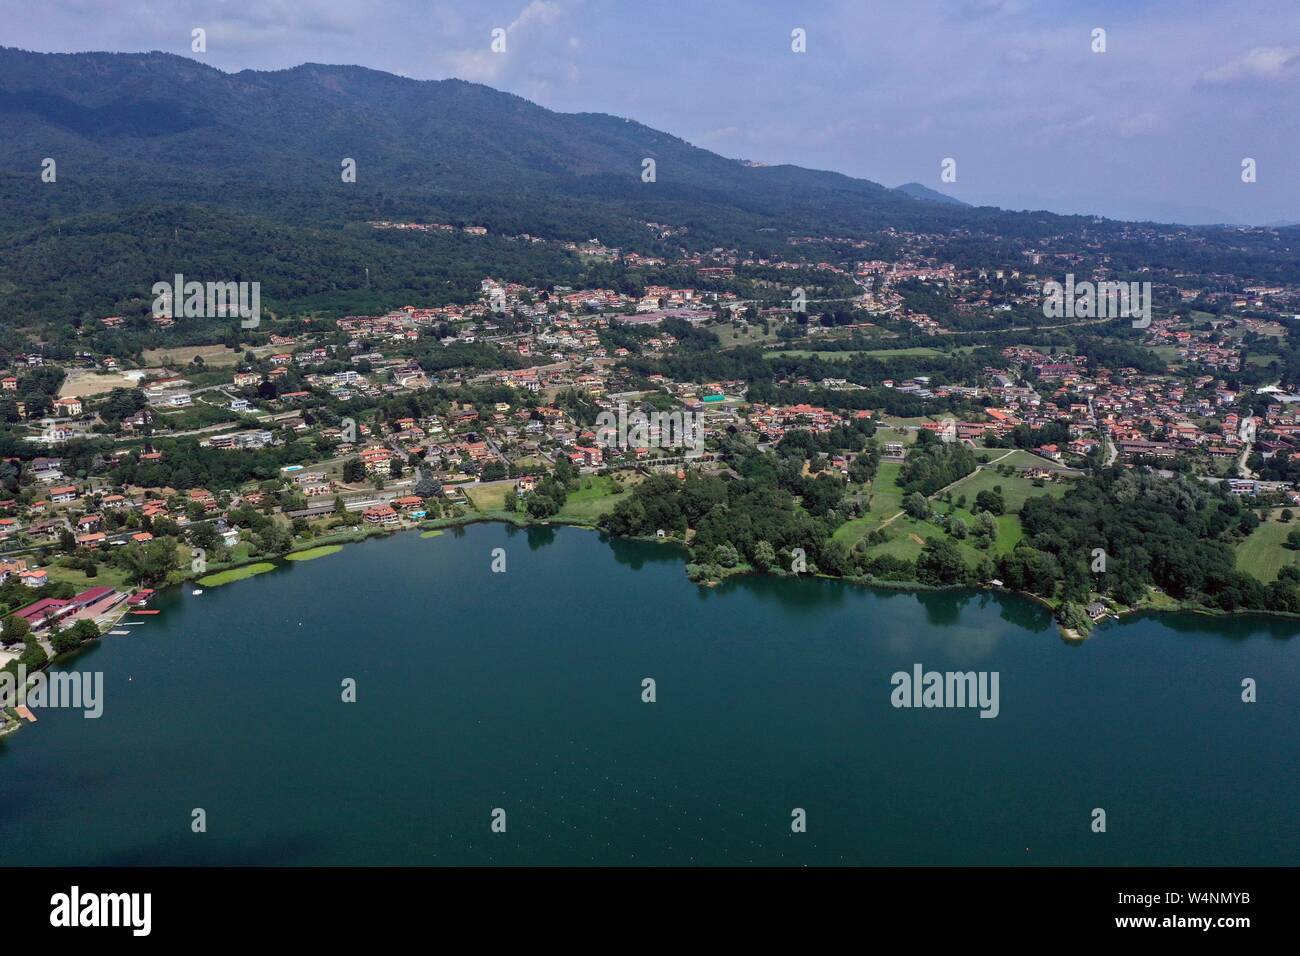 Vista aérea del lago Varese con las ciudades de Gavirate, Biandronno, Bardello y Fignano visible Foto de stock